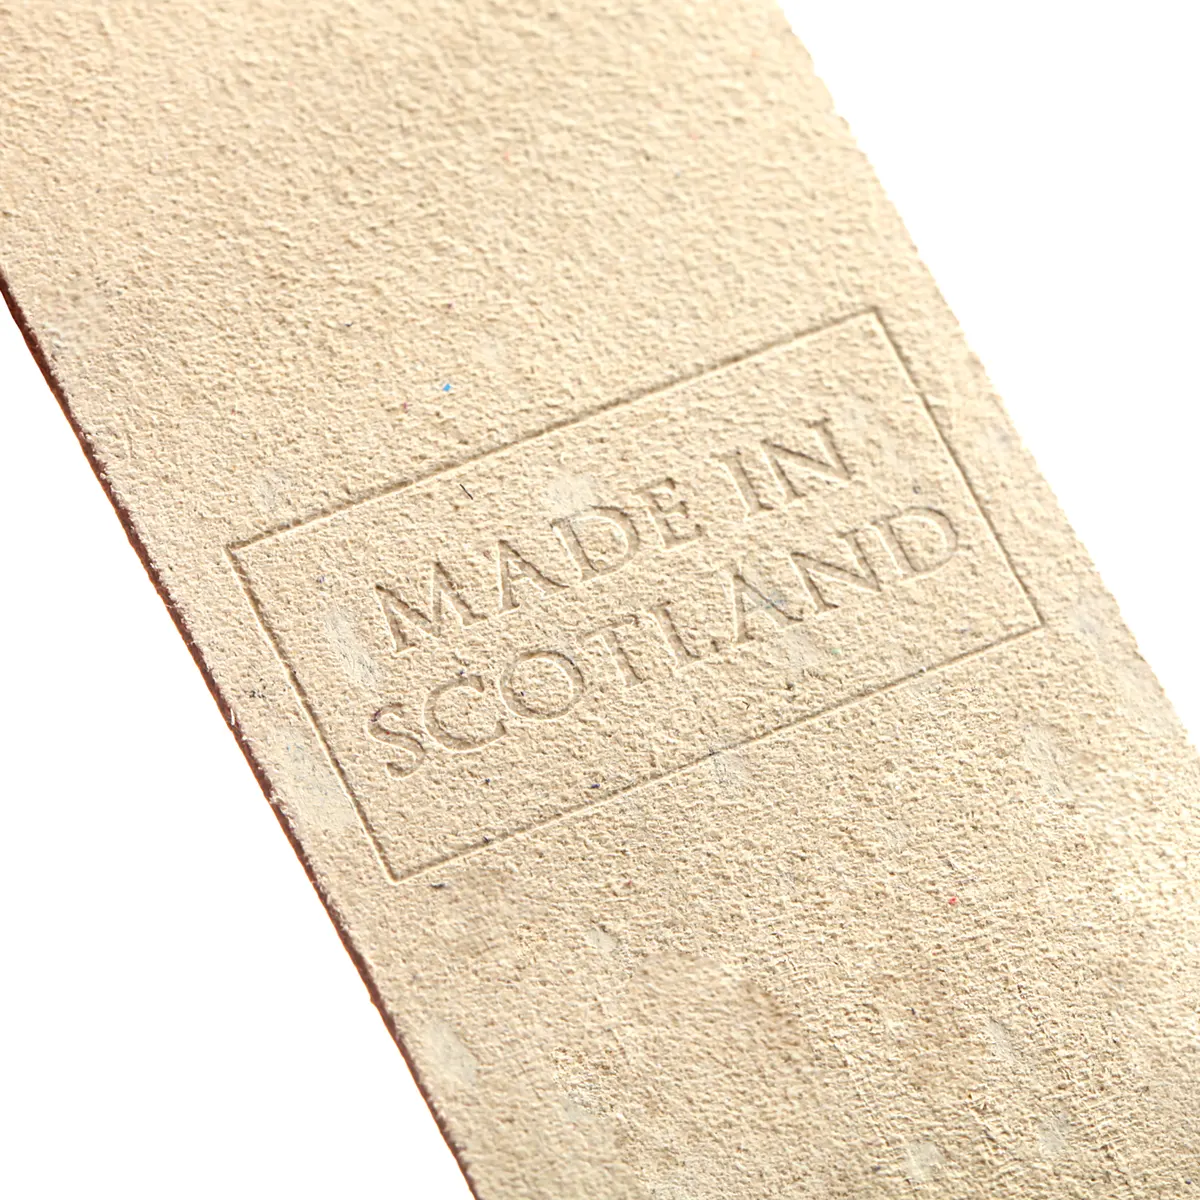 Tobermory - Lesezeichen aus Leder in Creme -  Made in Scotland